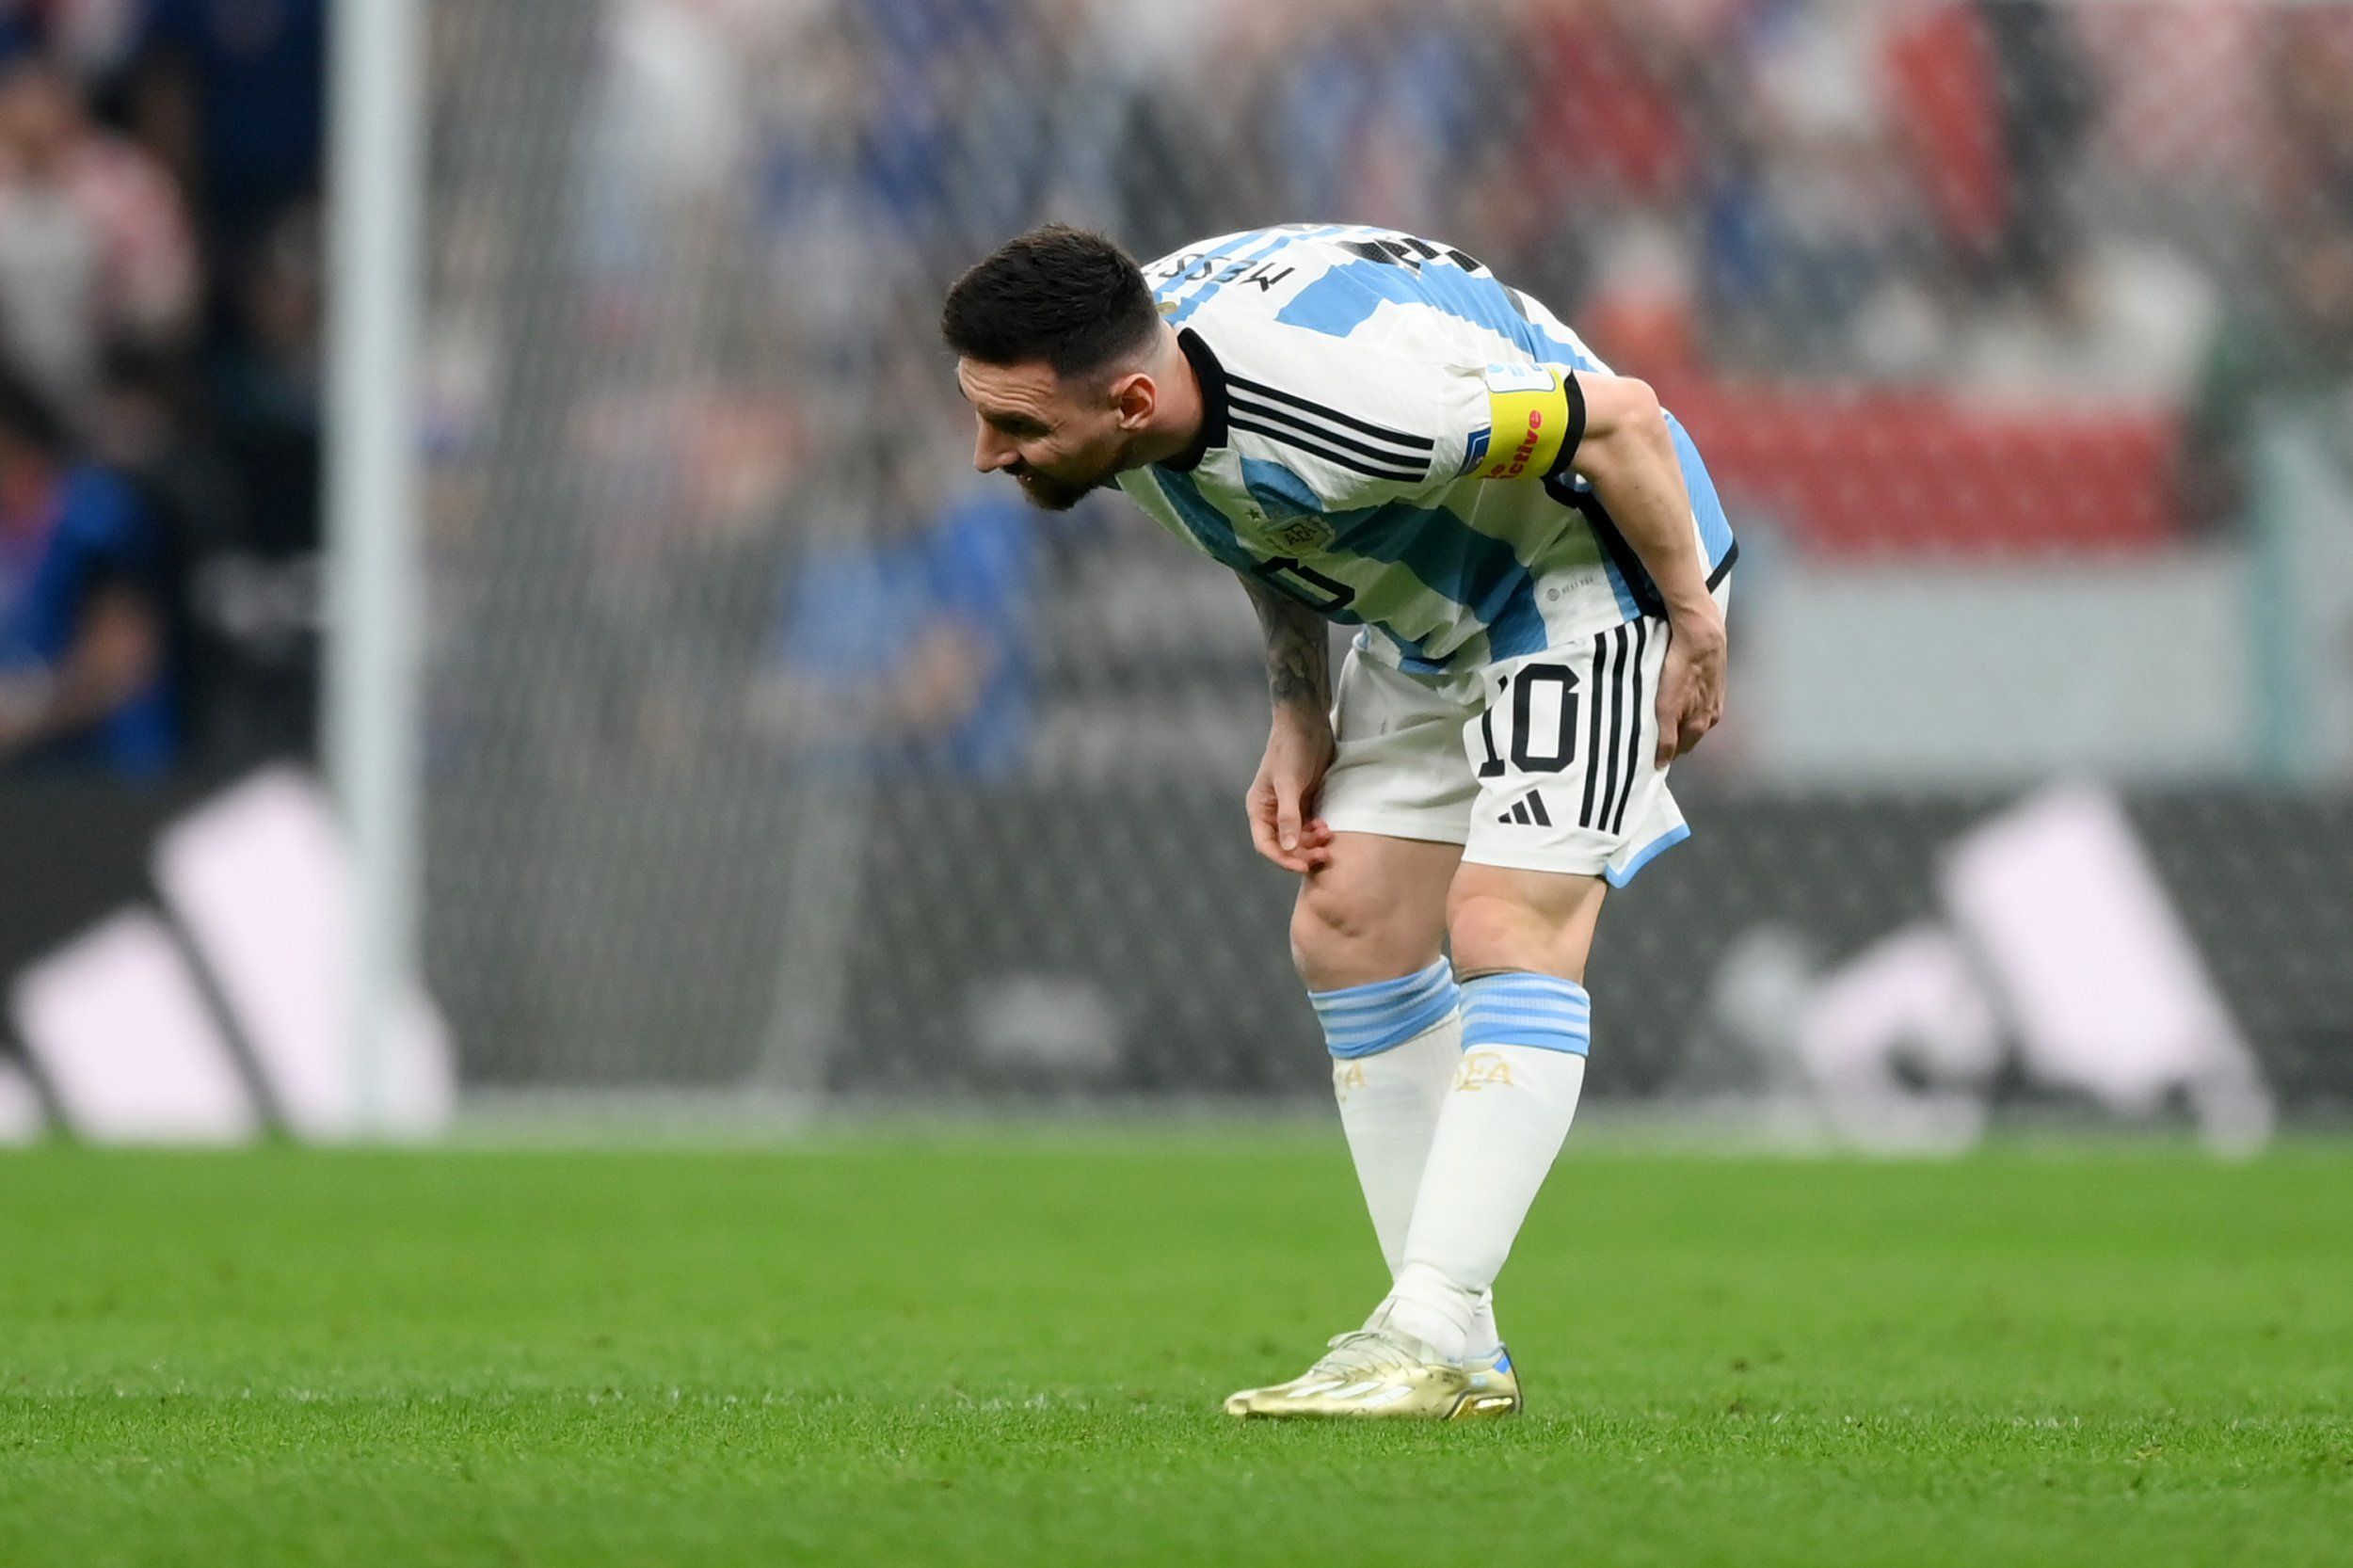 ULTIMA HORA: Se confirma la lesión de Lionel Messi